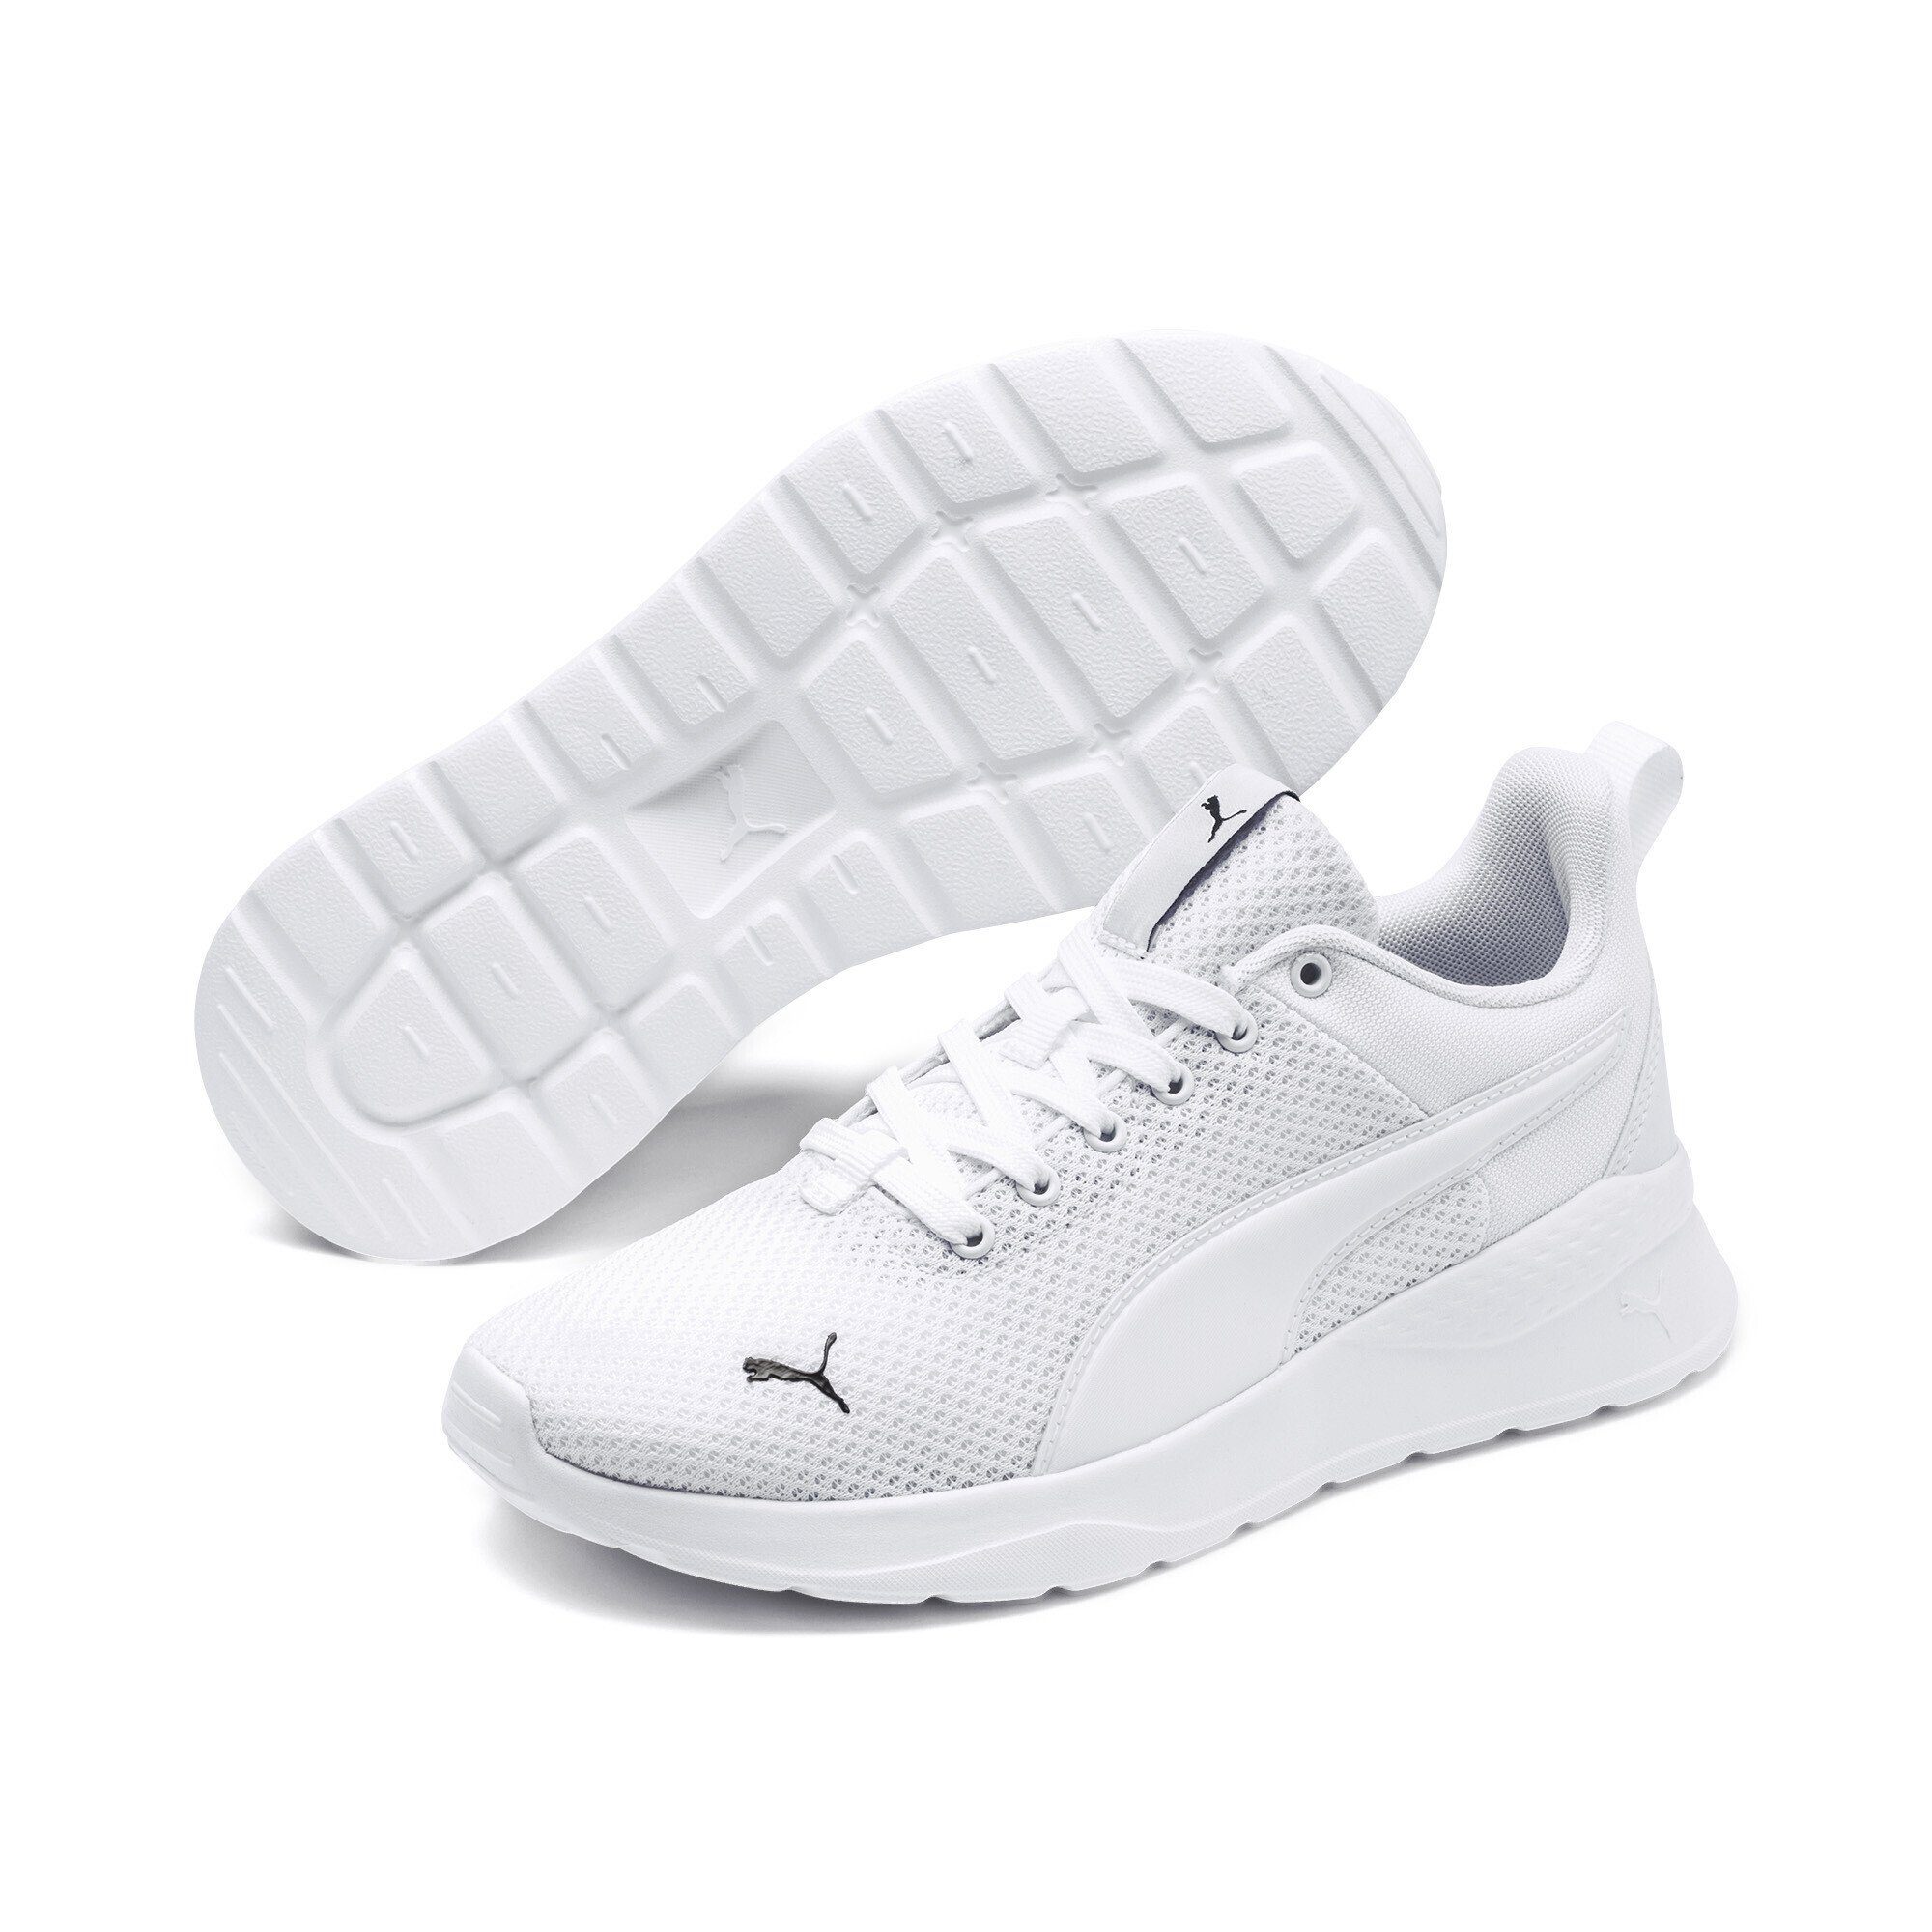 White Lite Sneakers Jugendliche Laufschuh Anzarun PUMA